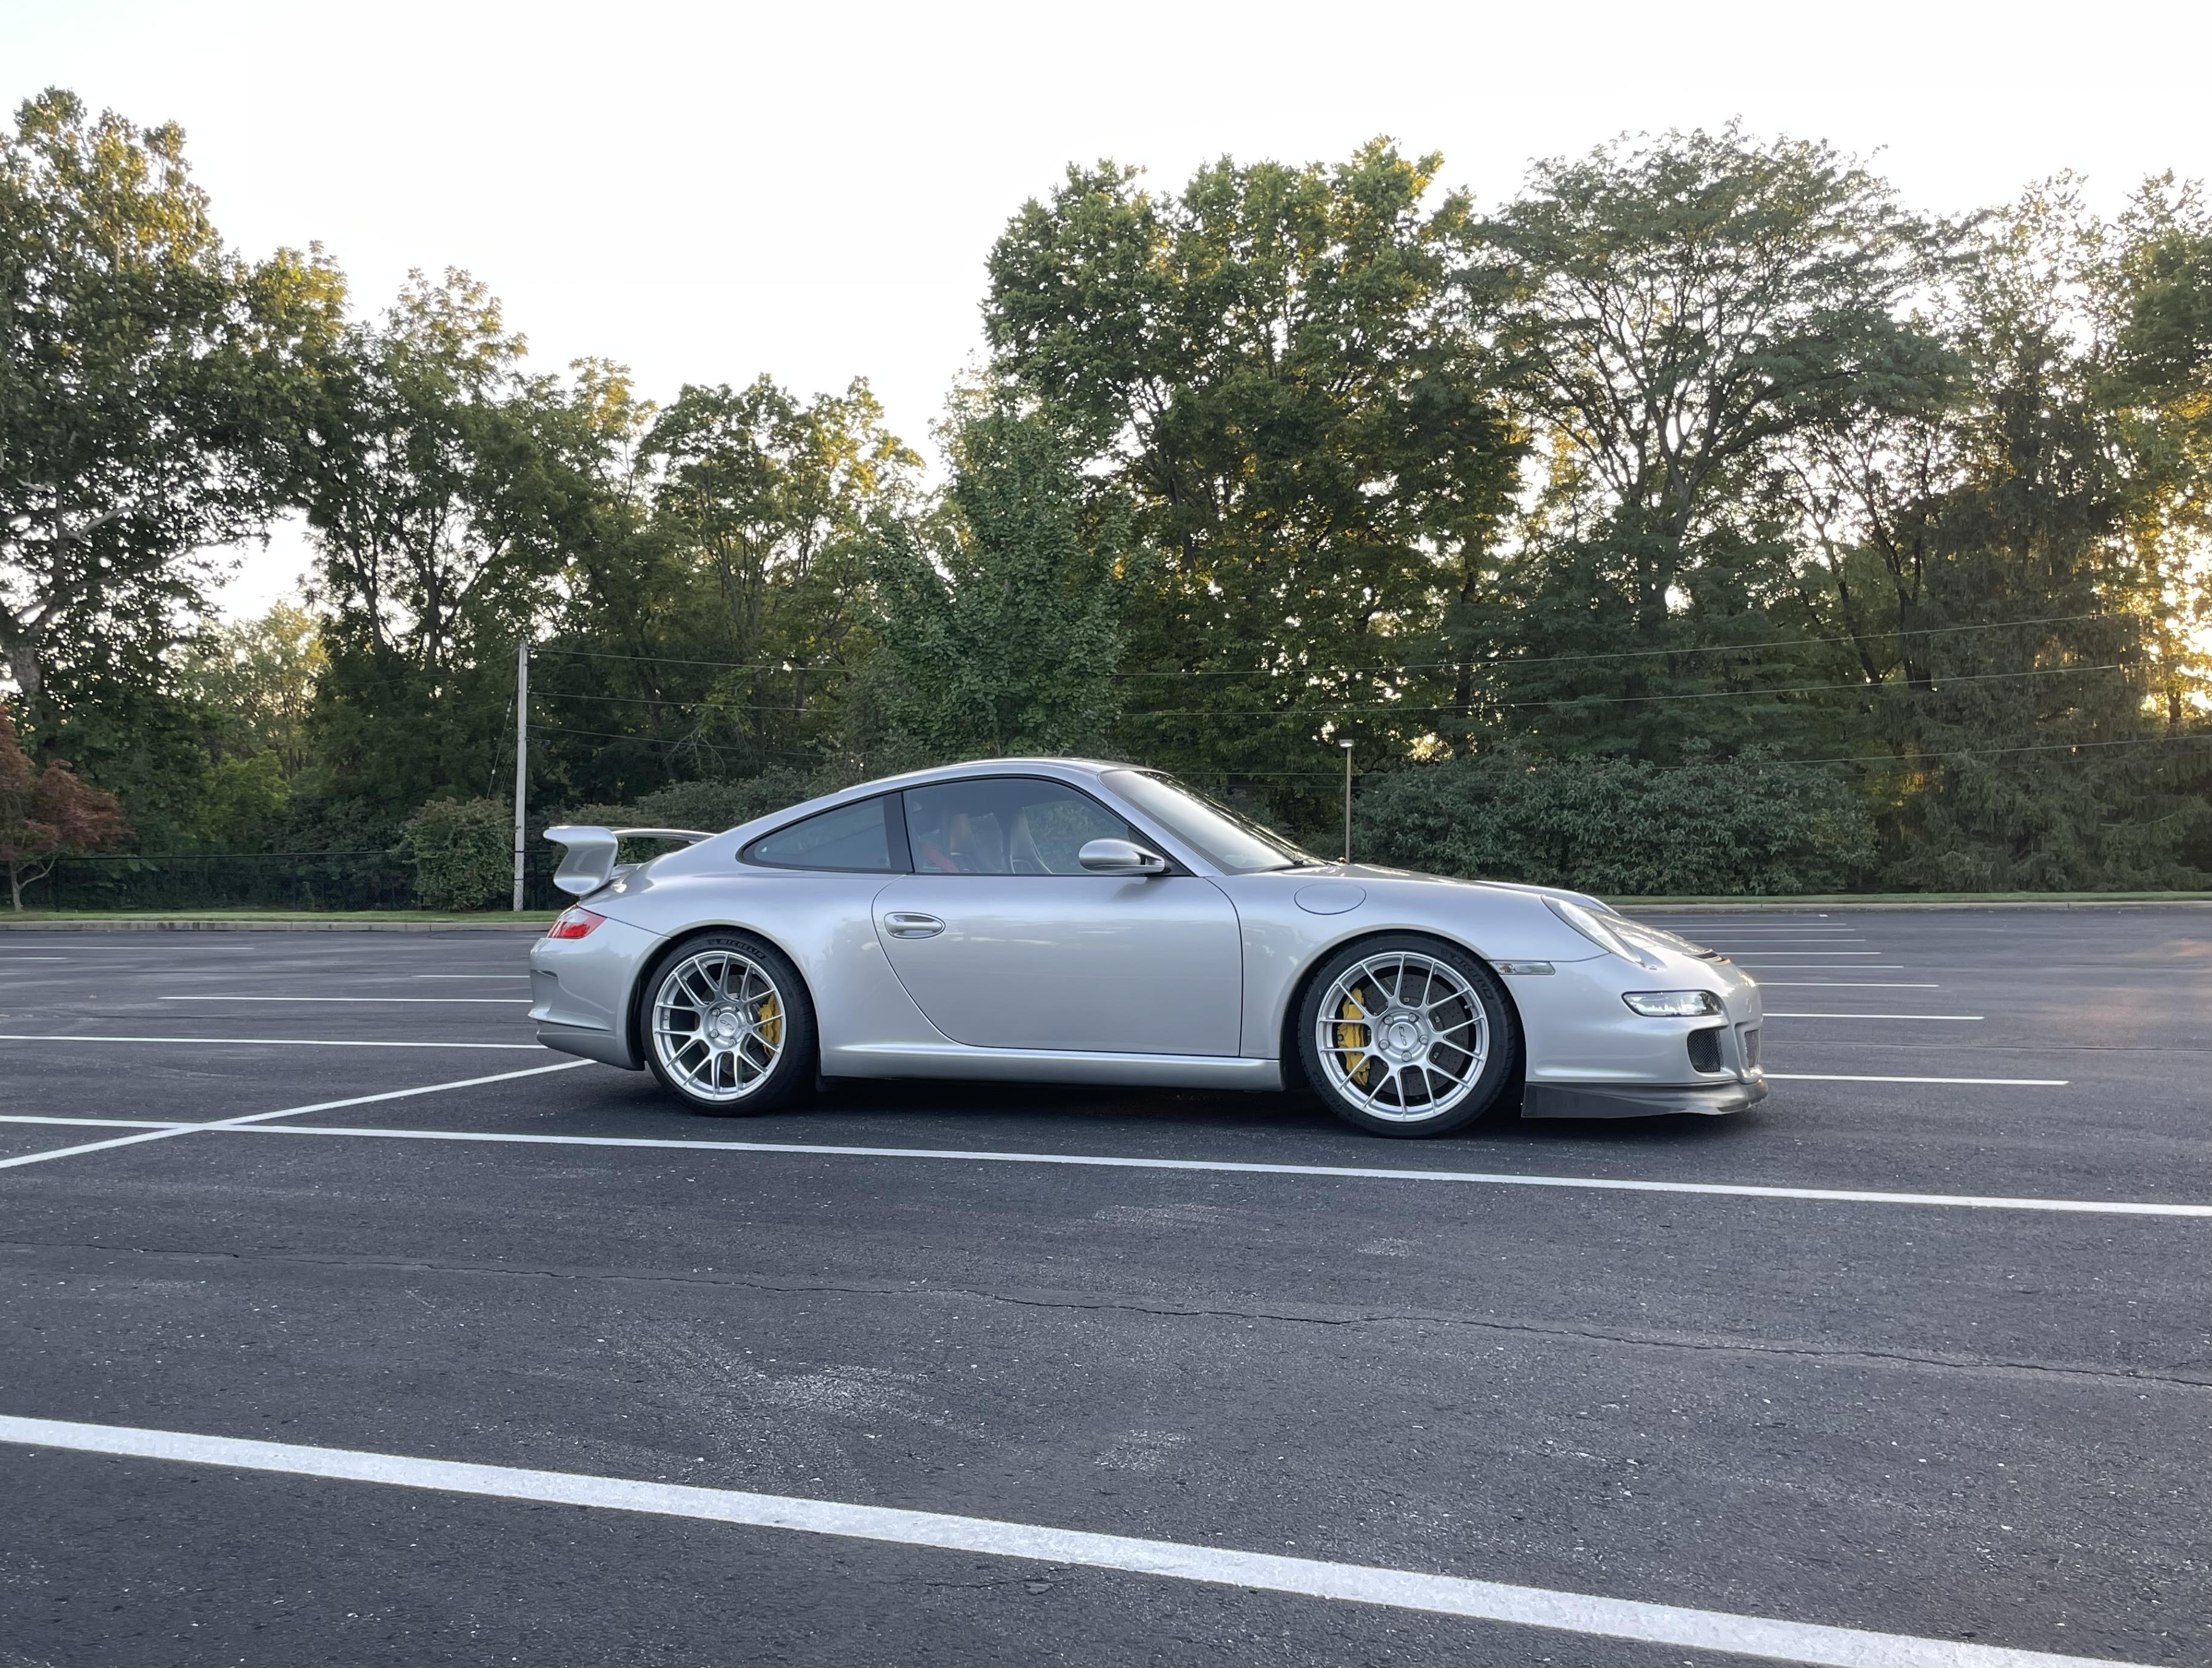 Porsche 911 997 GT3 with 19